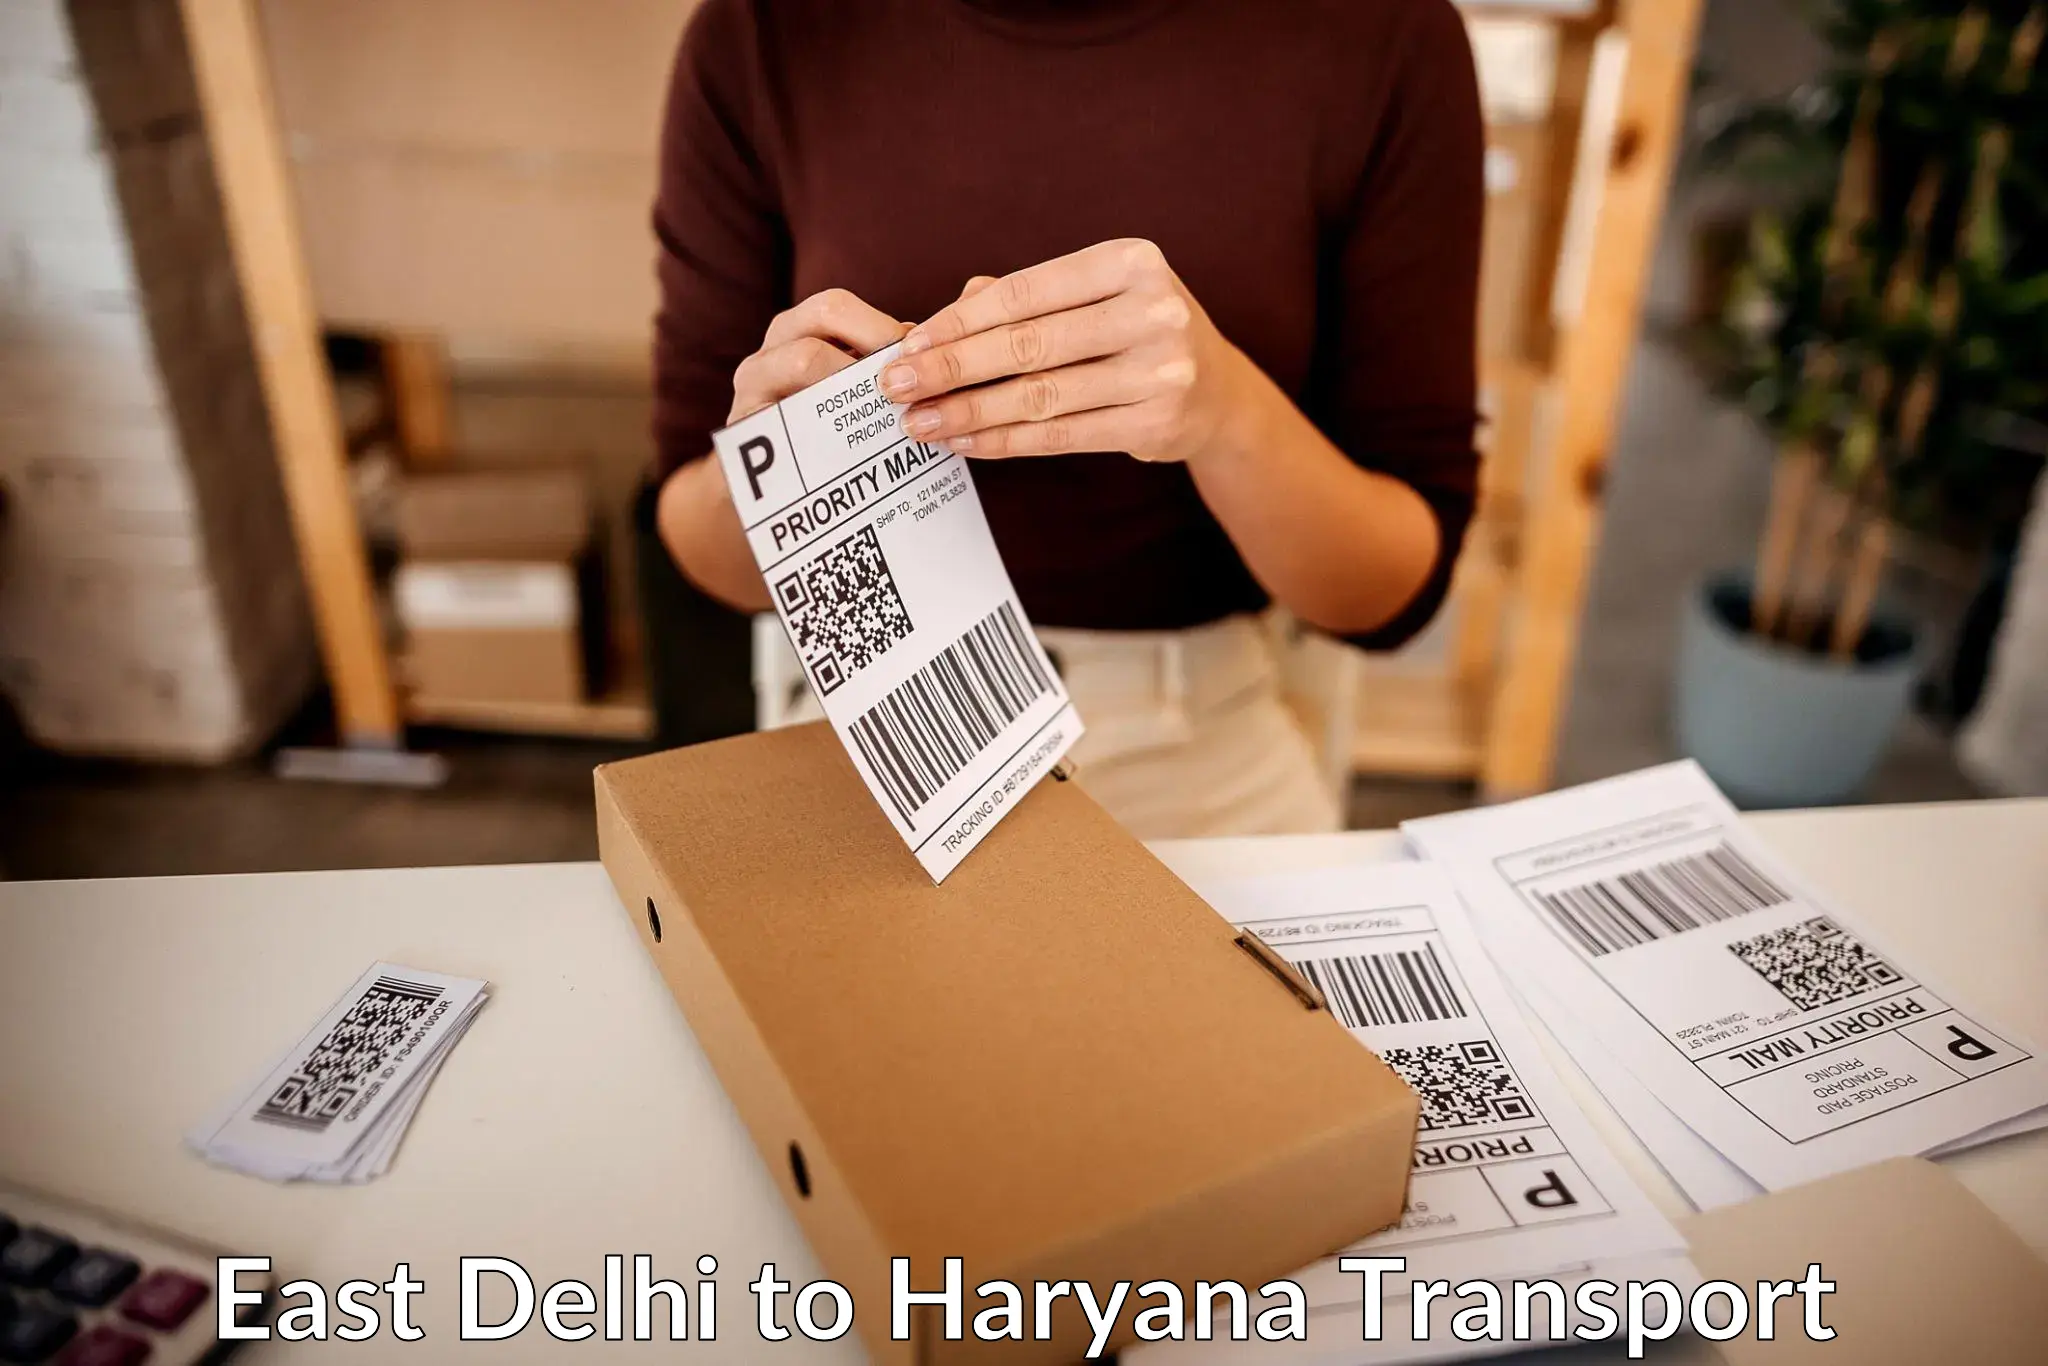 Delivery service East Delhi to Mandi Dabwali